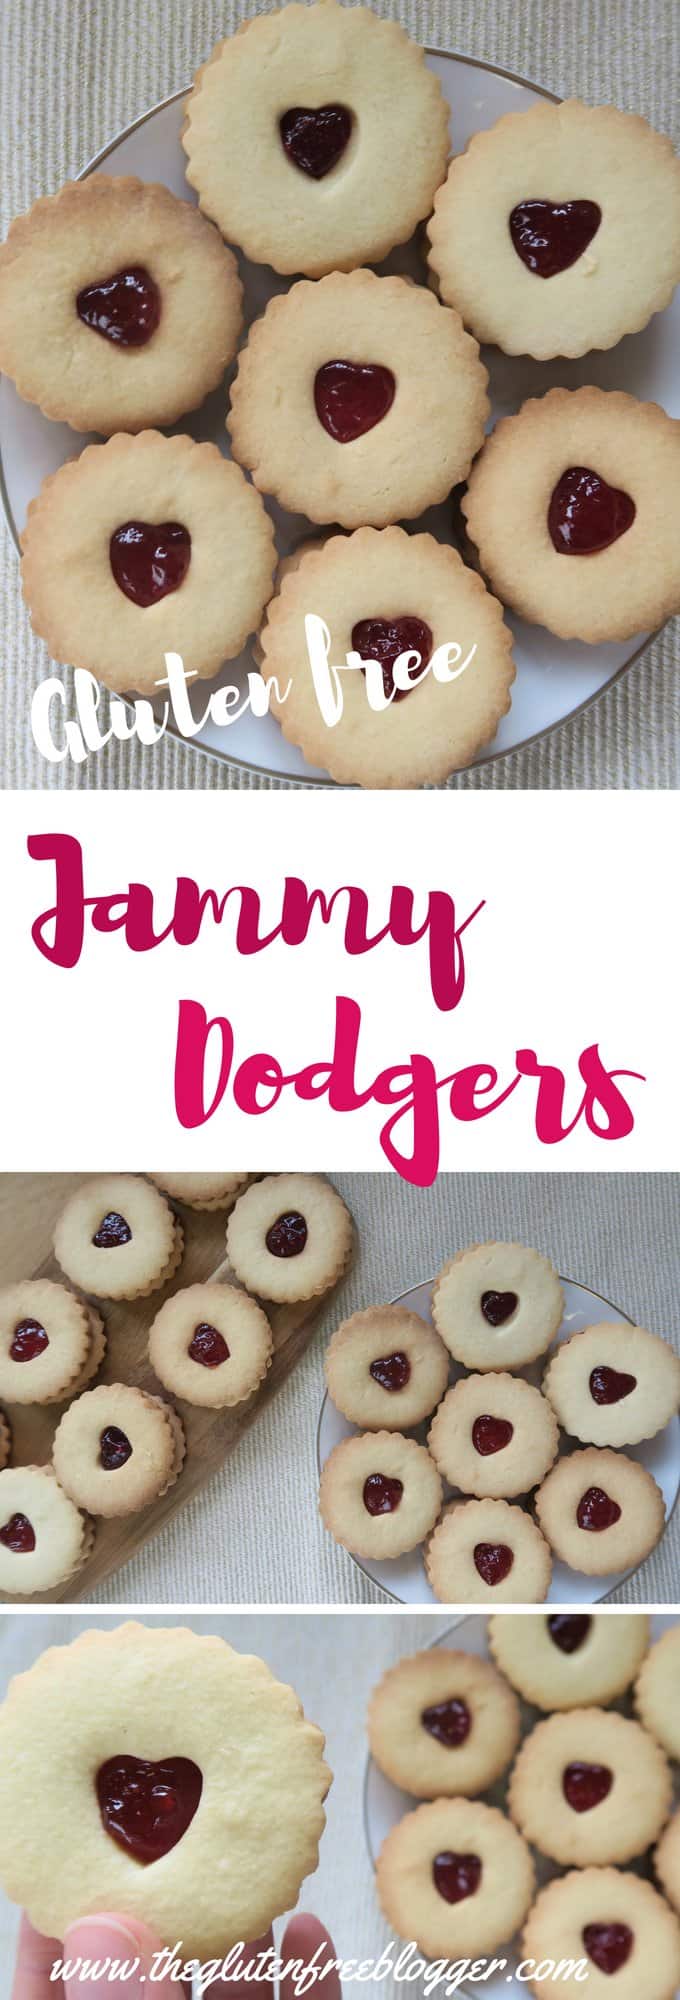 gluten free jammy dodgers - gluten free jammie dodgers - jammy dodgers recipe - jammie dodgers recipe - gluten free biscuits - gbbo - biscuit recipe - www.theglutenfreeblogger.com